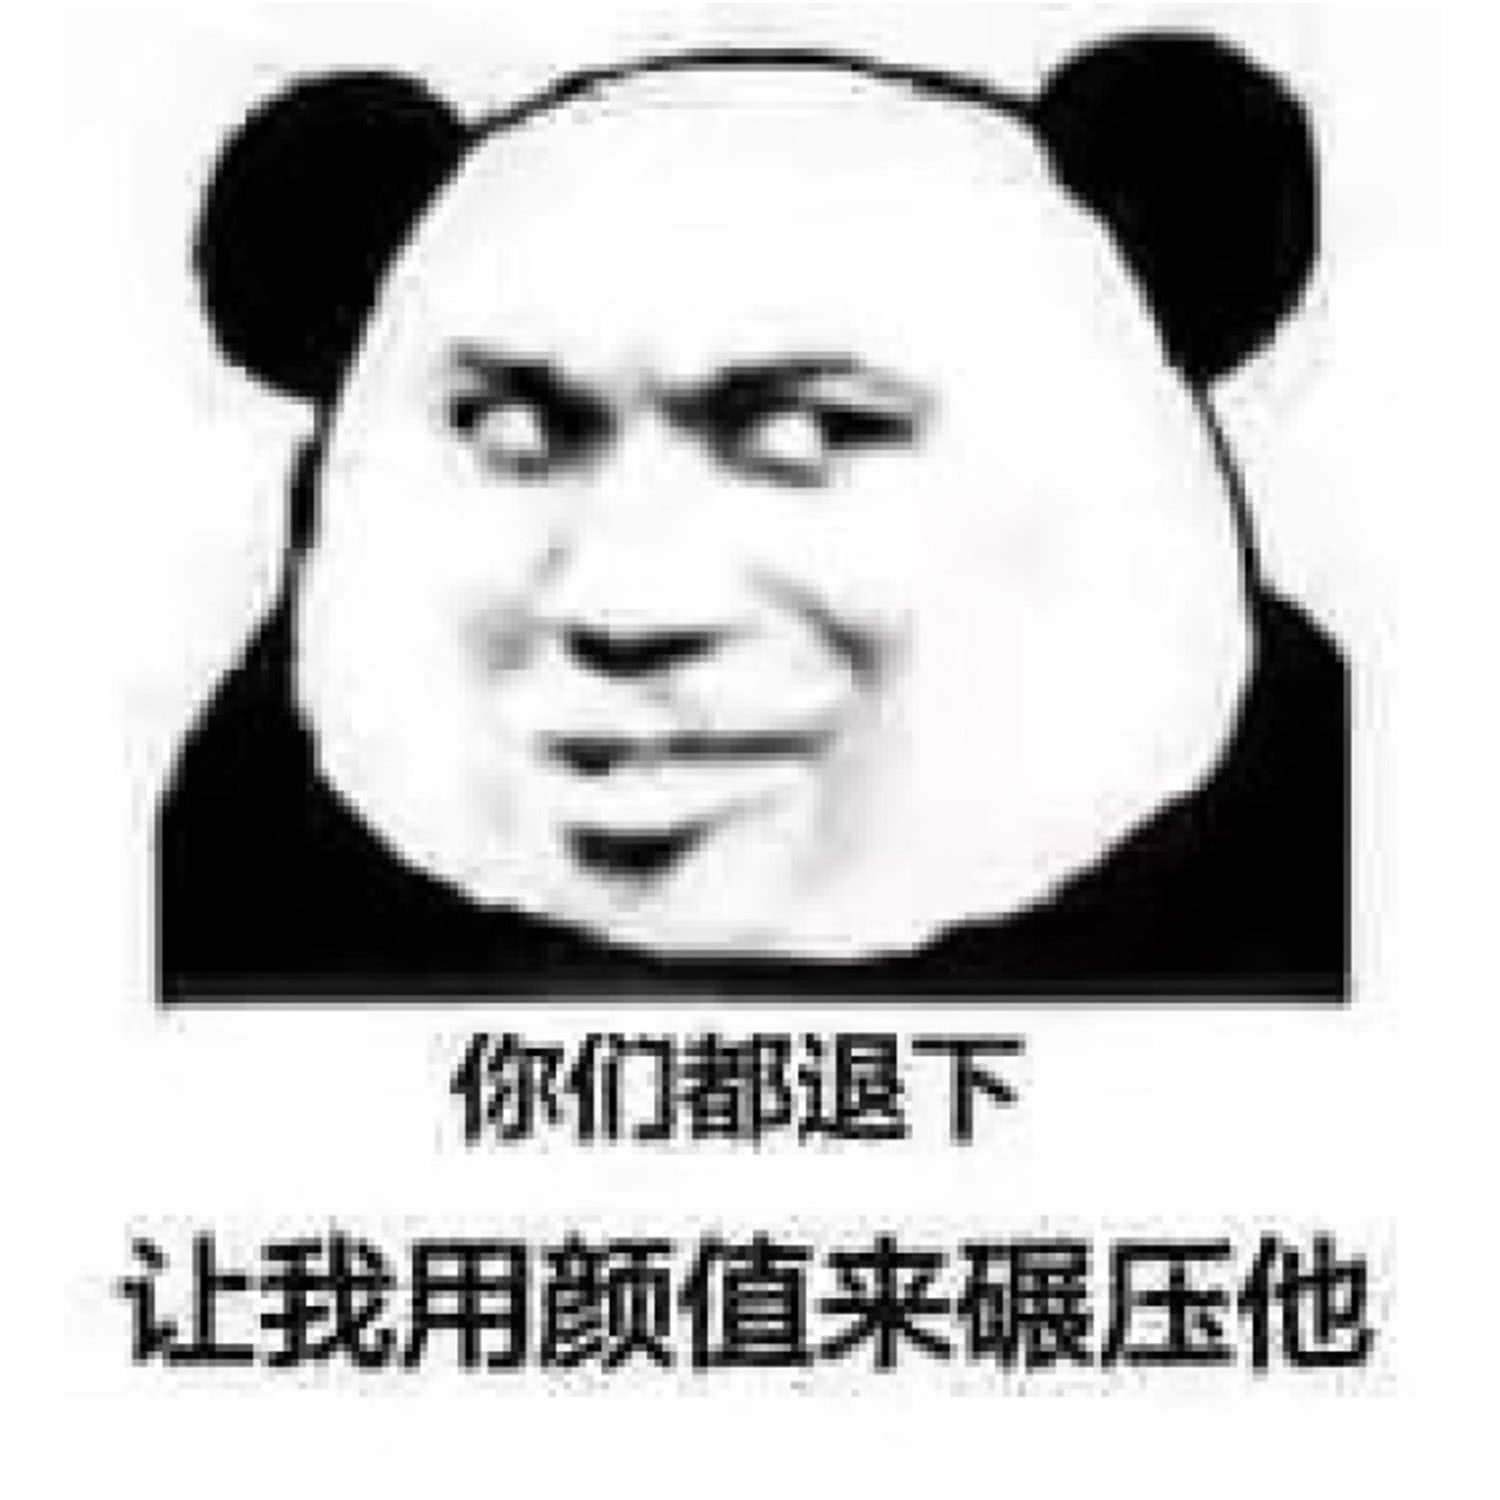 1月18日 11:47   关注  熊猫头 表情包 评论 收藏